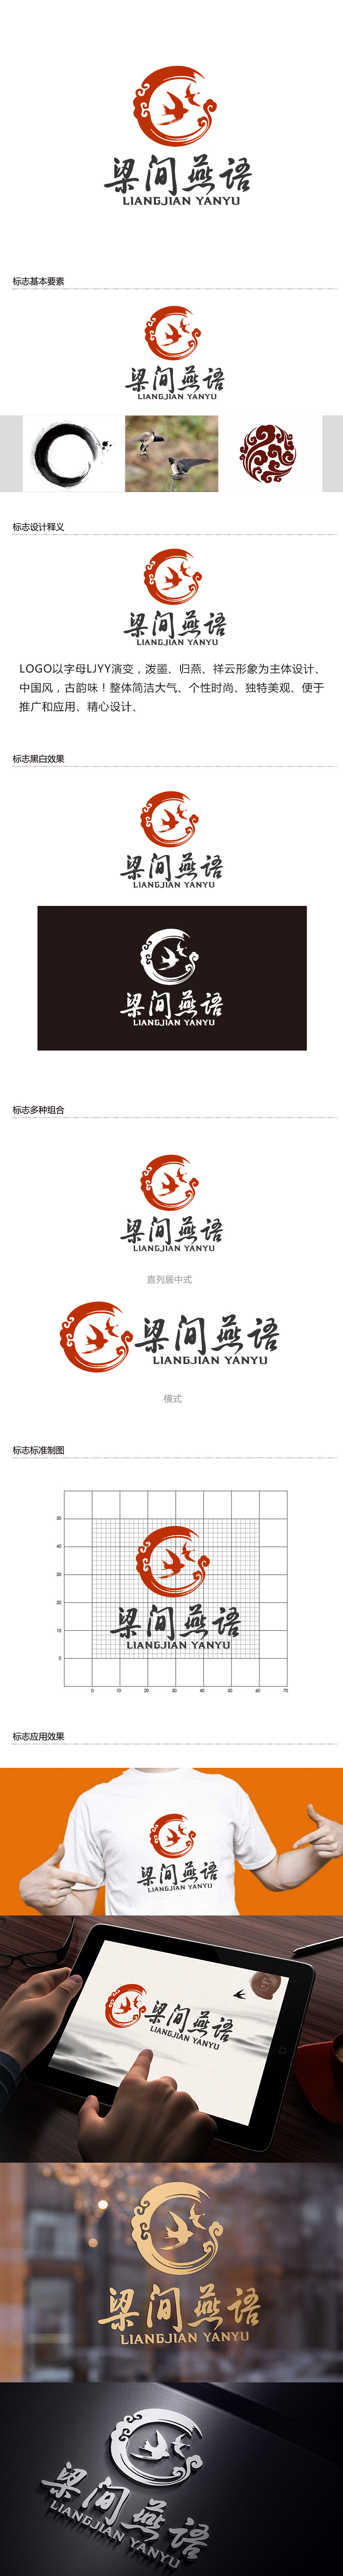 潘乐的梁间燕语食品销售logo设计